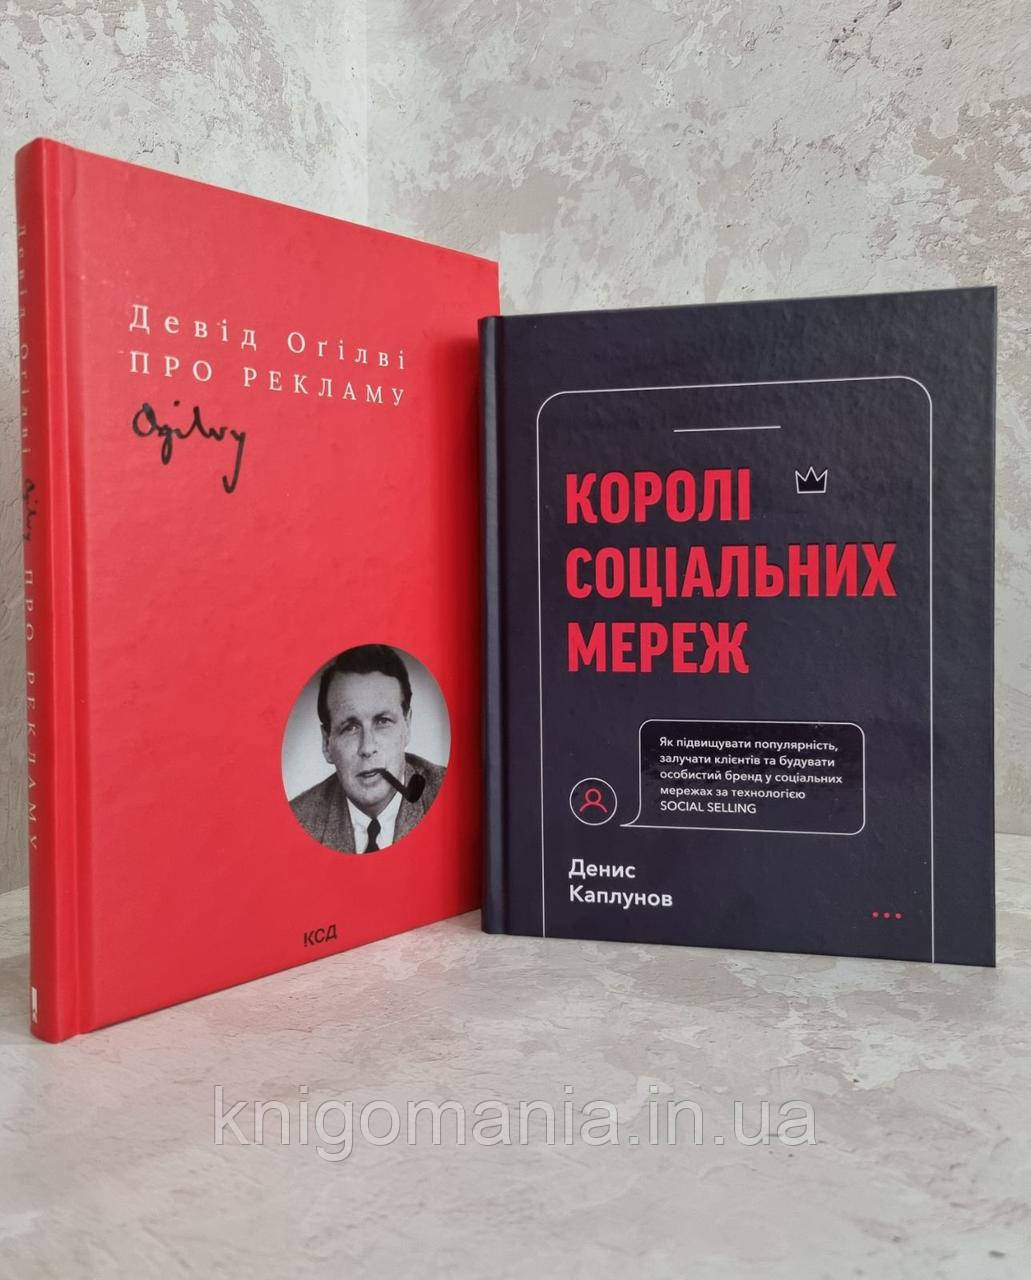 Набір книг "Королі соціальних мереж" Денис Каплунов та "Про рекламу" Девід Огілві